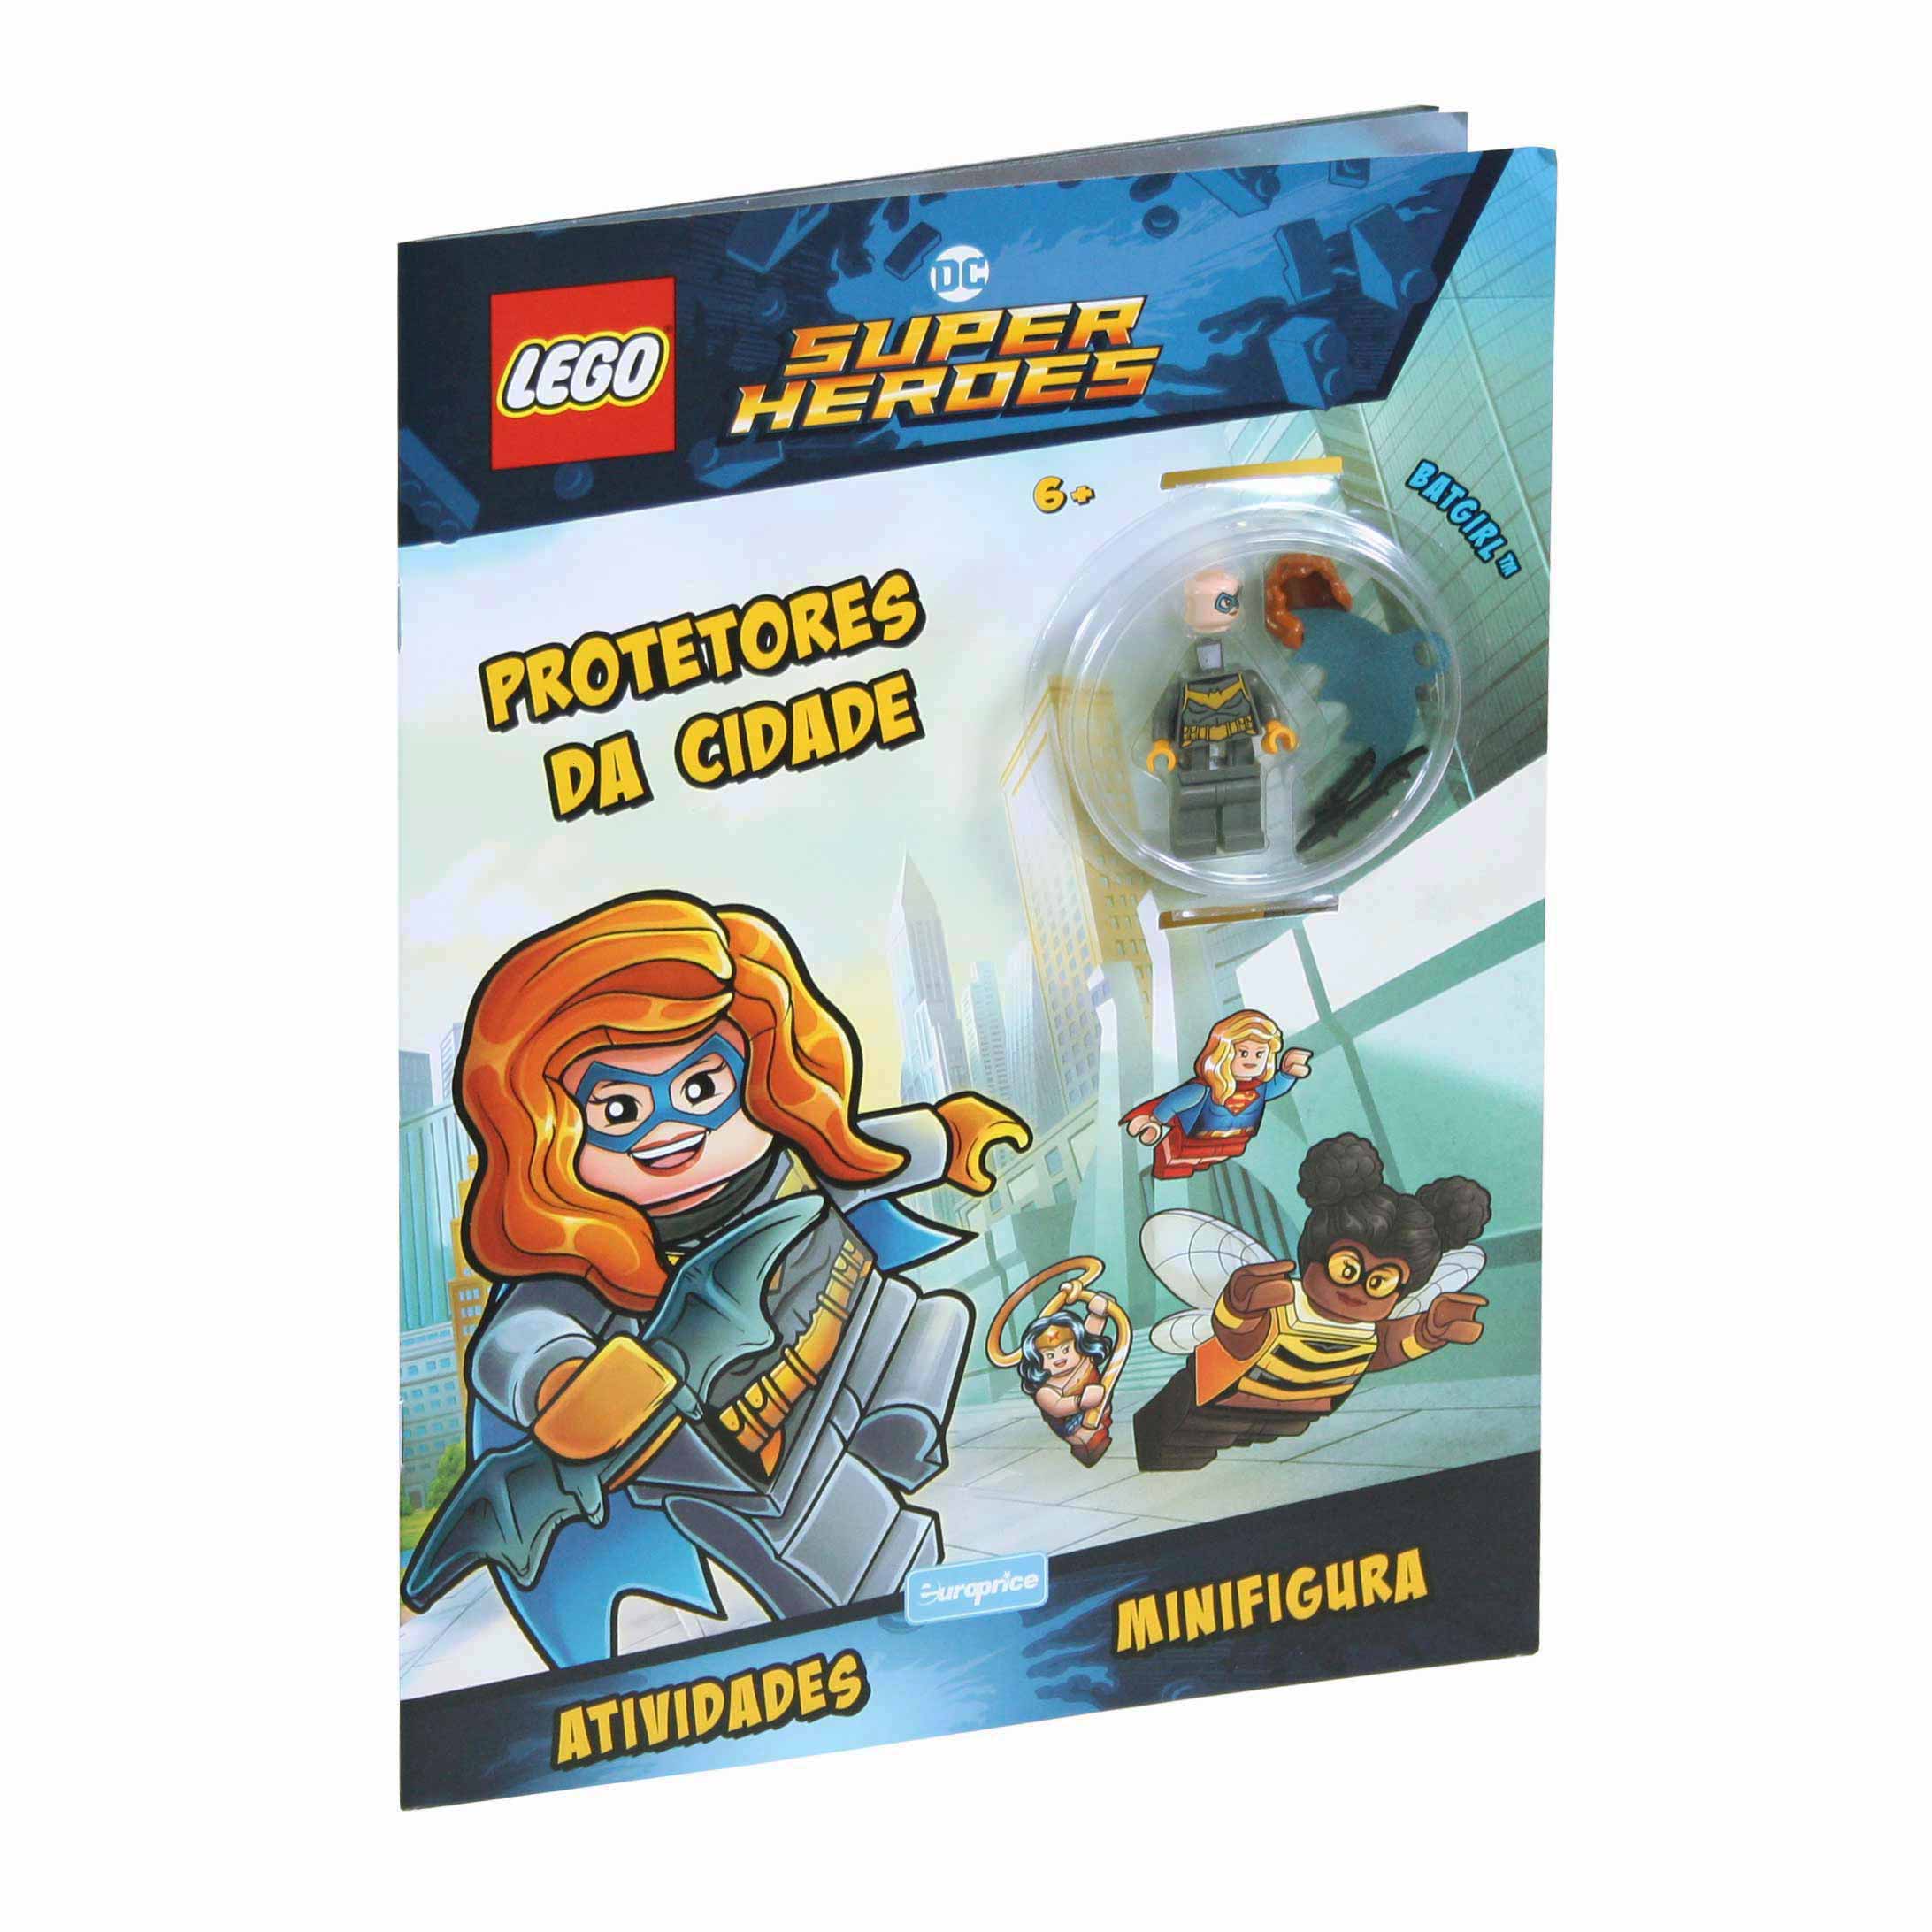 Imagem da capa do livro LEGO Atividades - Protetores da cidade